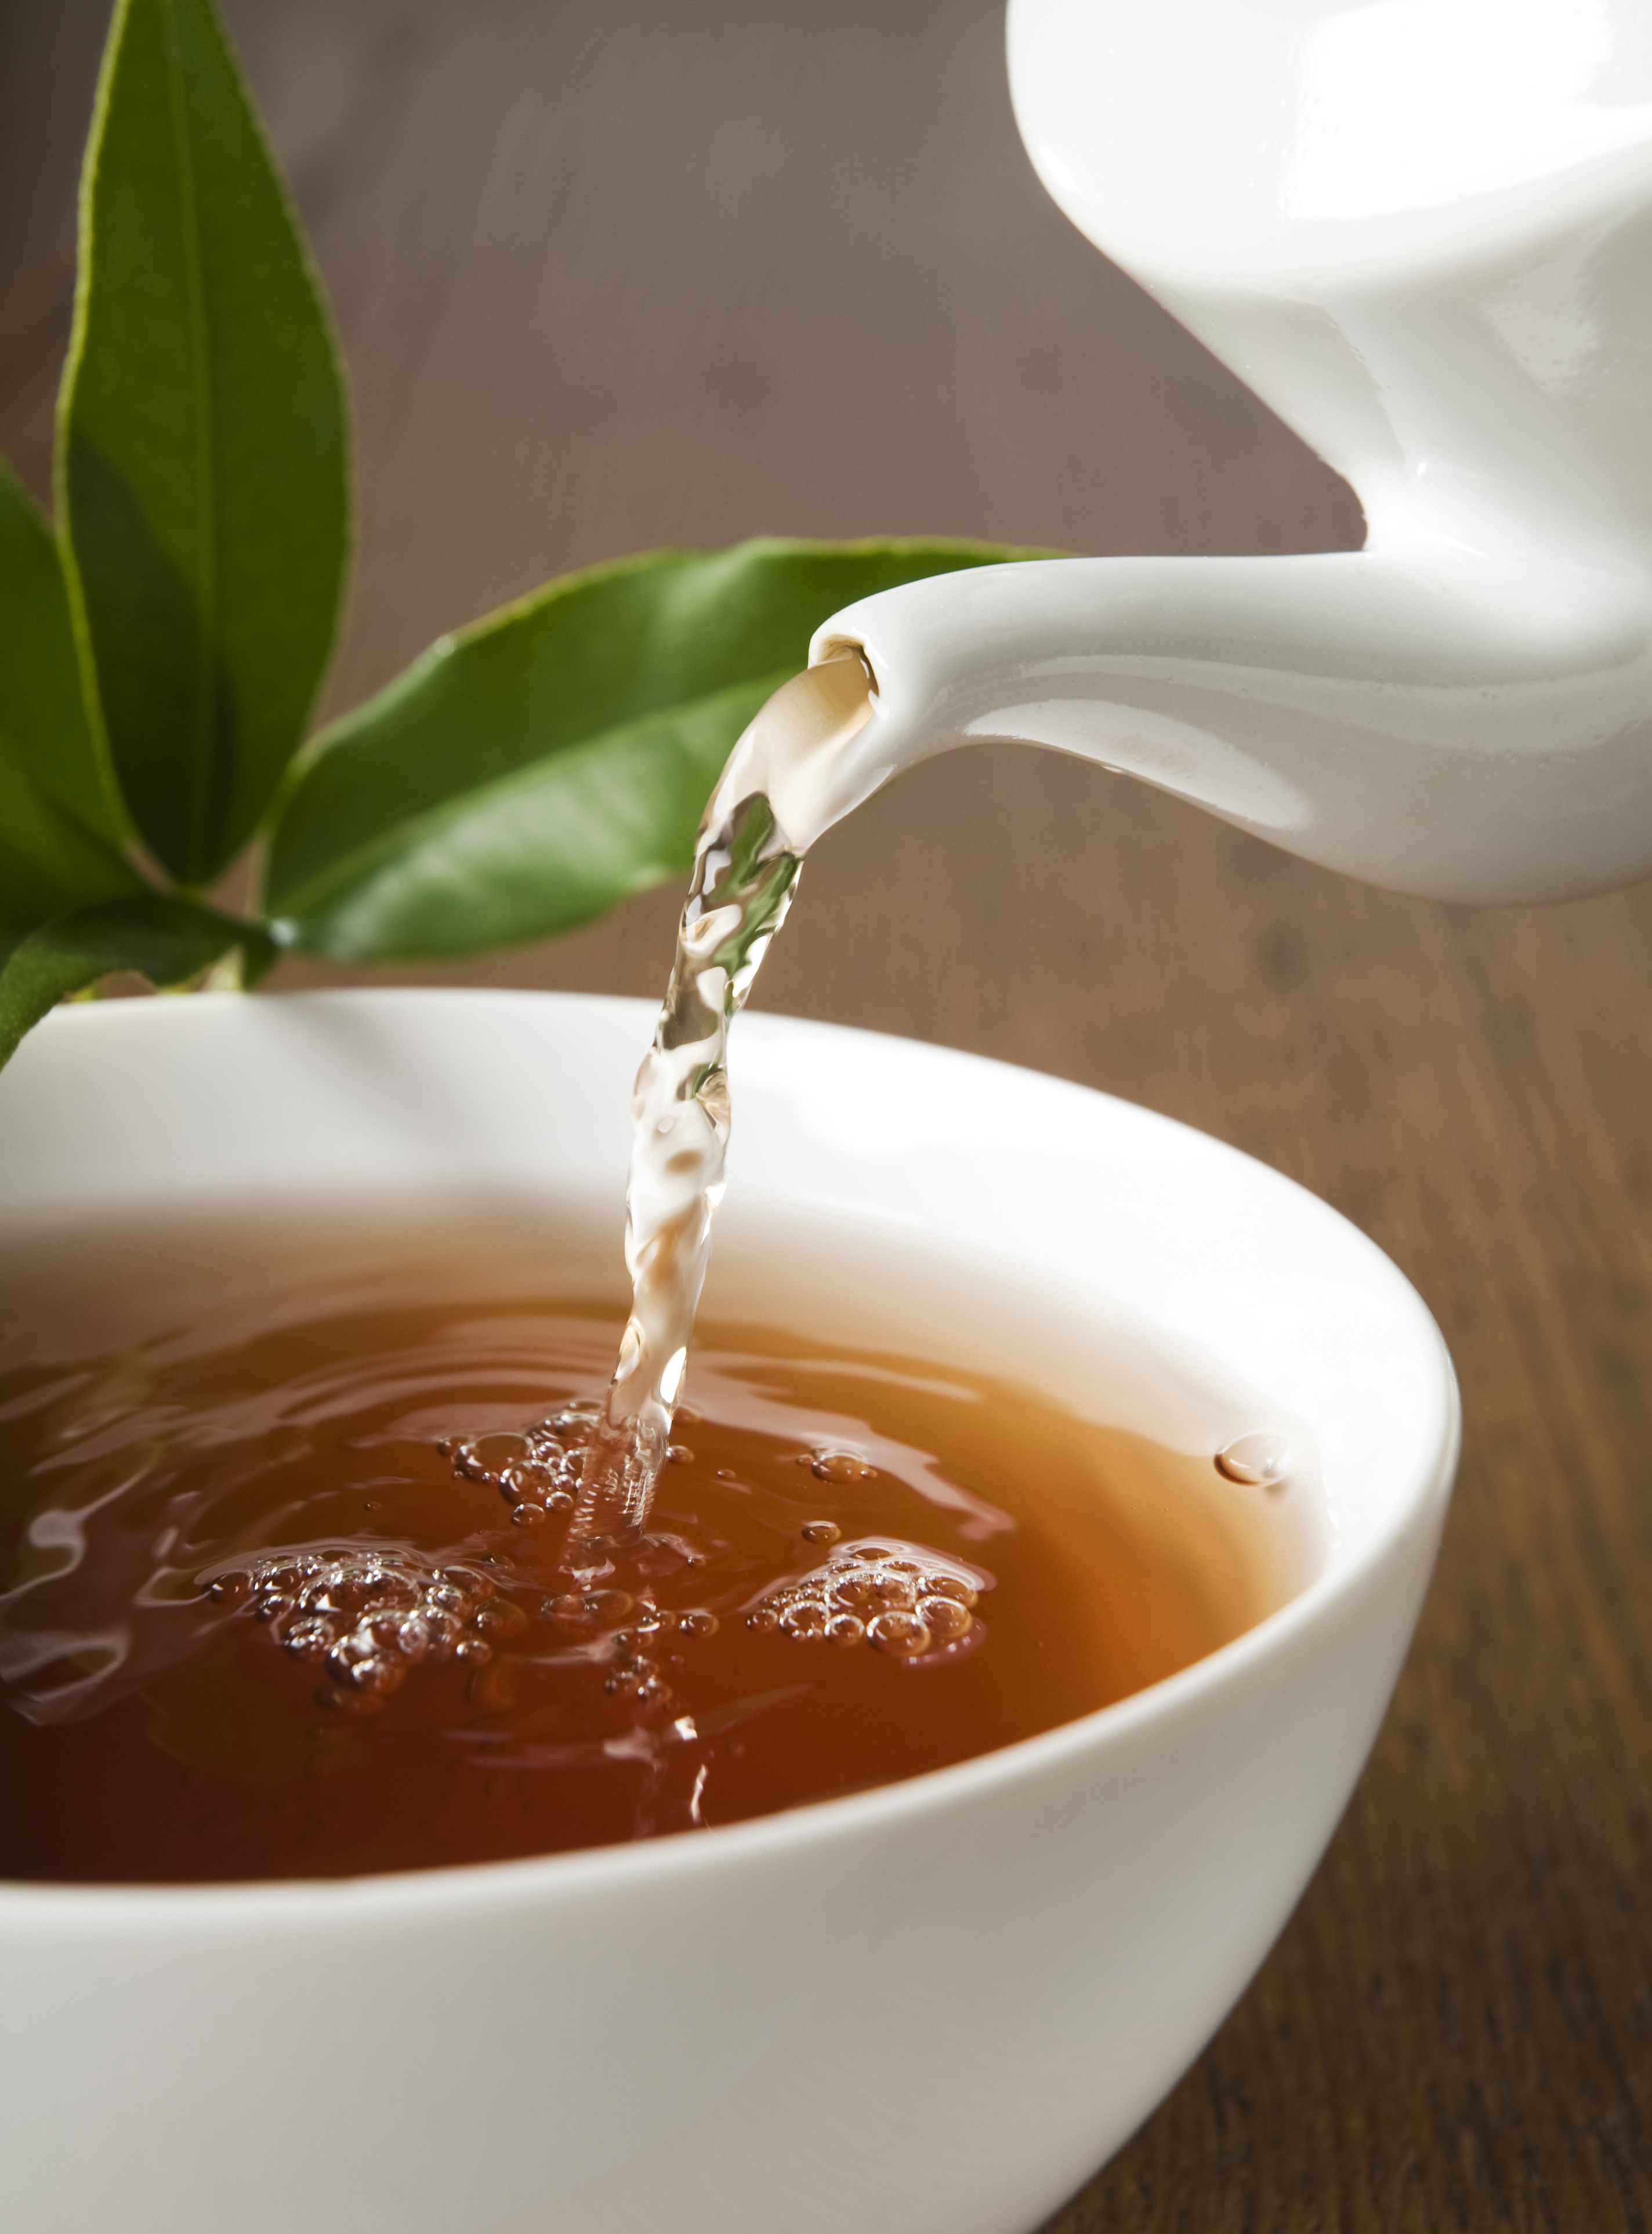 best herbal tea for deep sleep